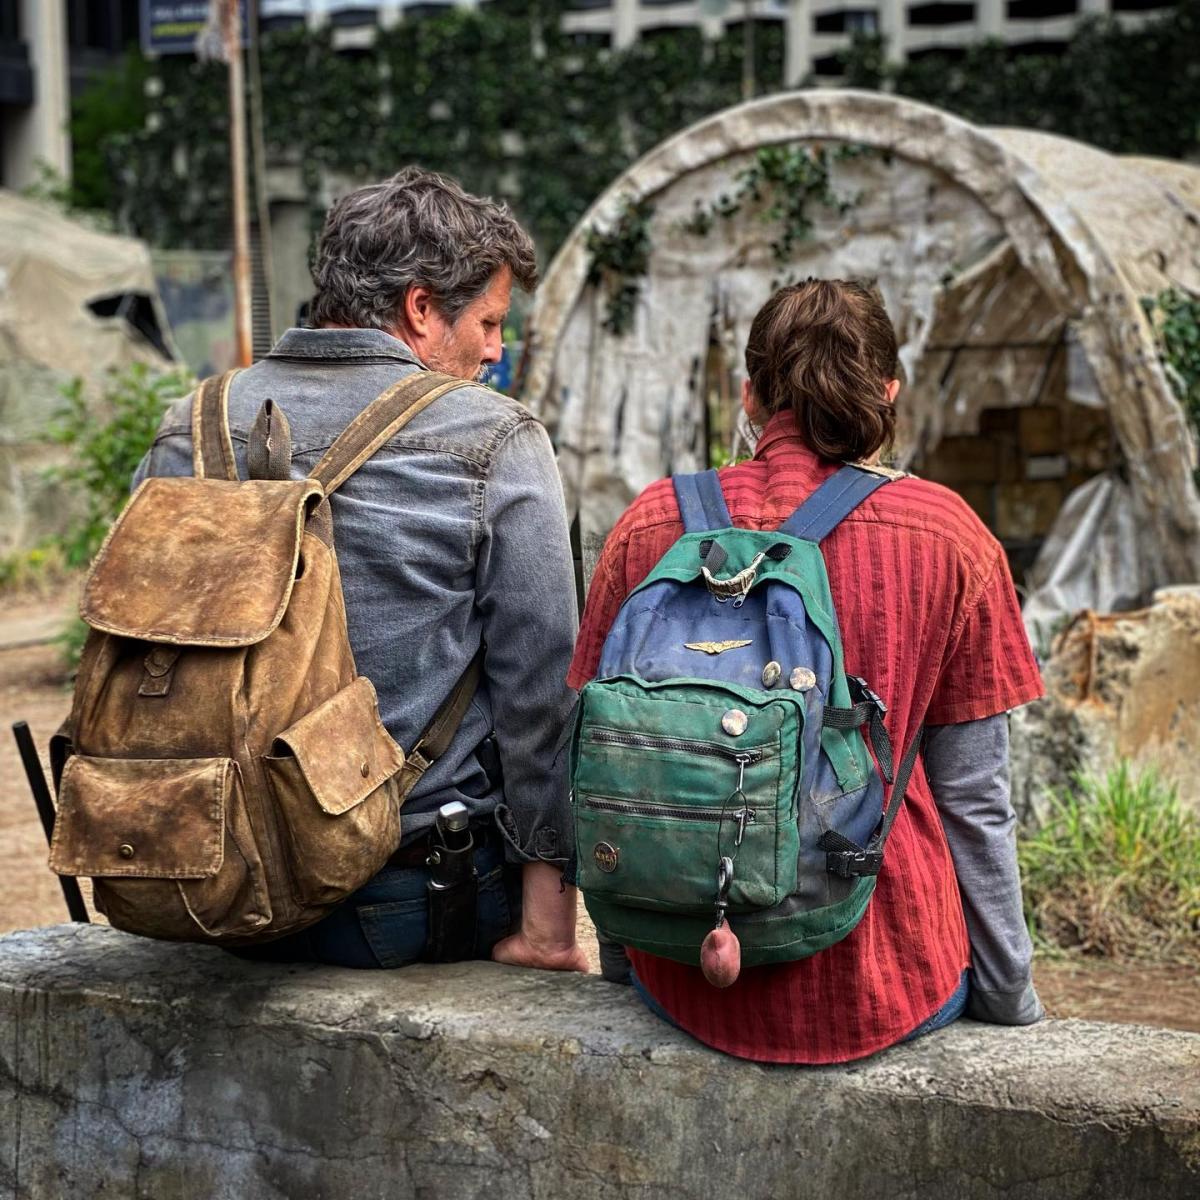 مسلسل The Last of Us ذا لاست اوف اس - مصدر الصورة إنستغرام